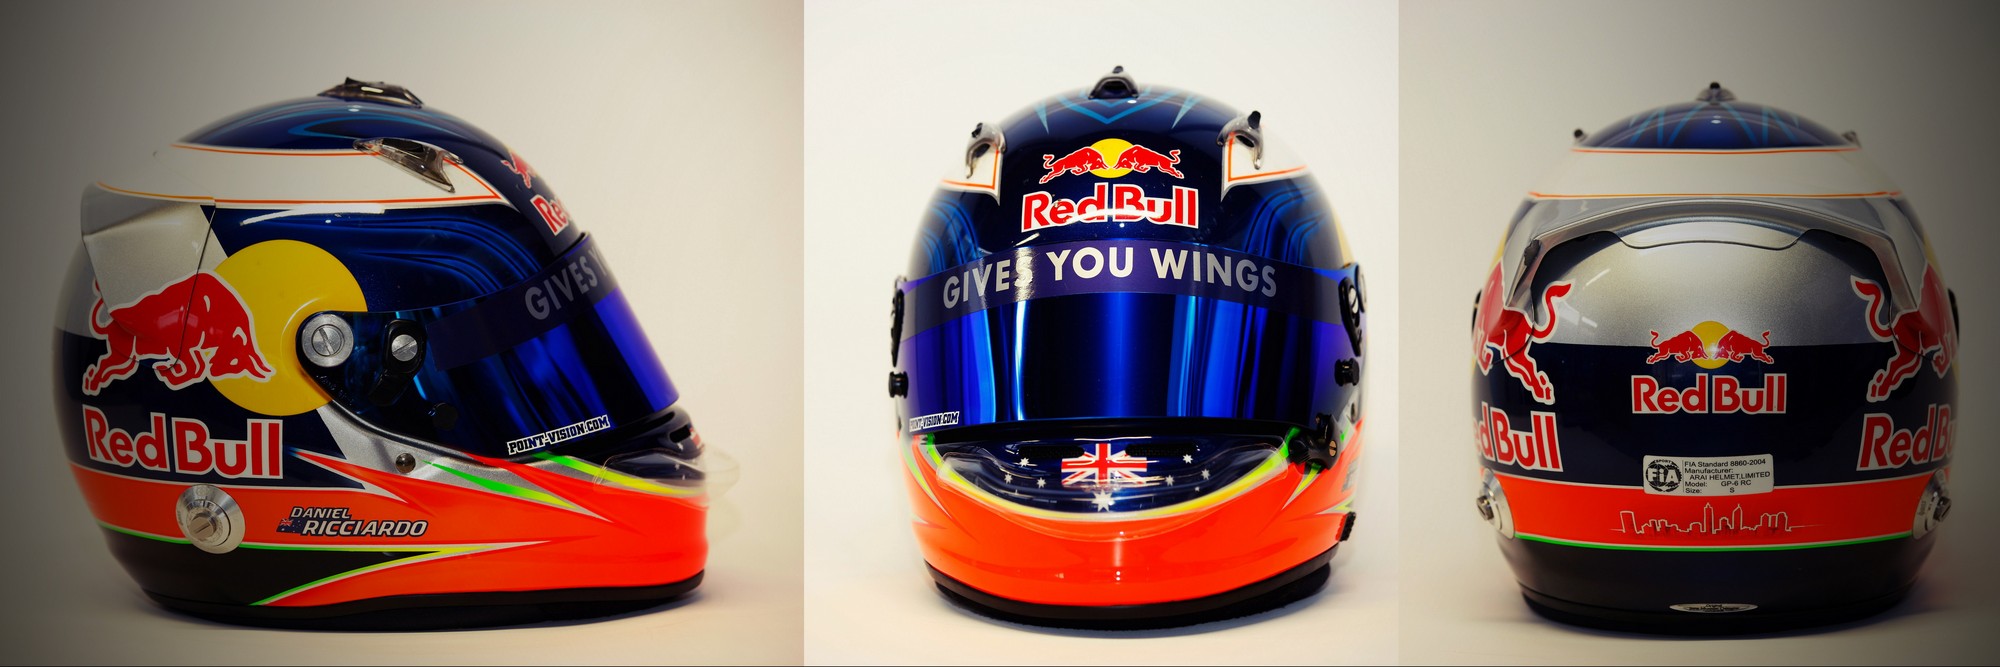 Шлем Даниэля Риккьярдо на сезон 2011 года | 2011 helmet of Daniel Ricciardo